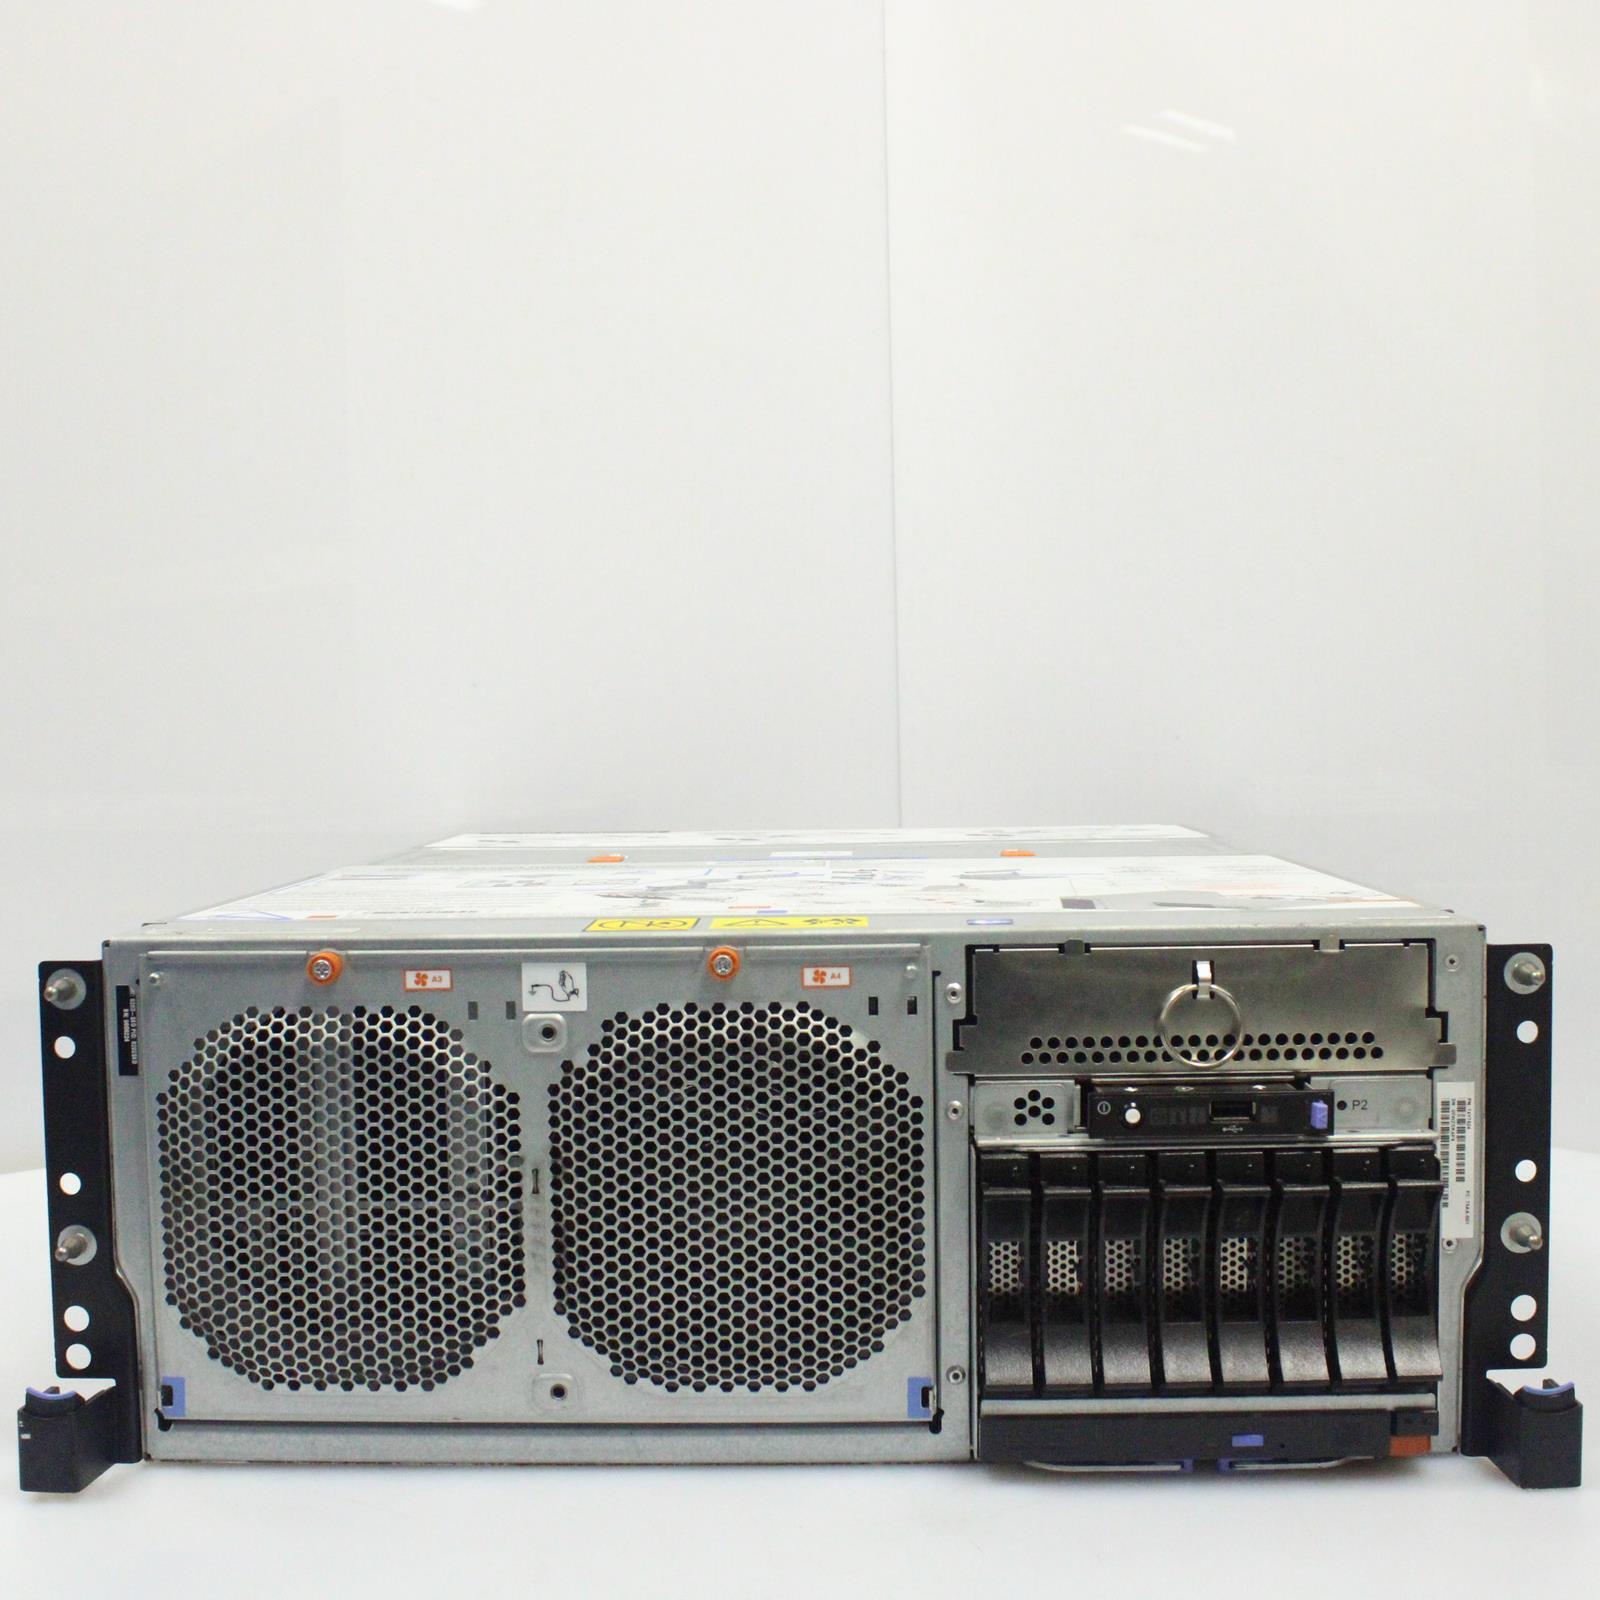 IBM POWER 720 IBM 8202-E4D EPCM 128GB RAM No Drive/OS/Face Plate Server